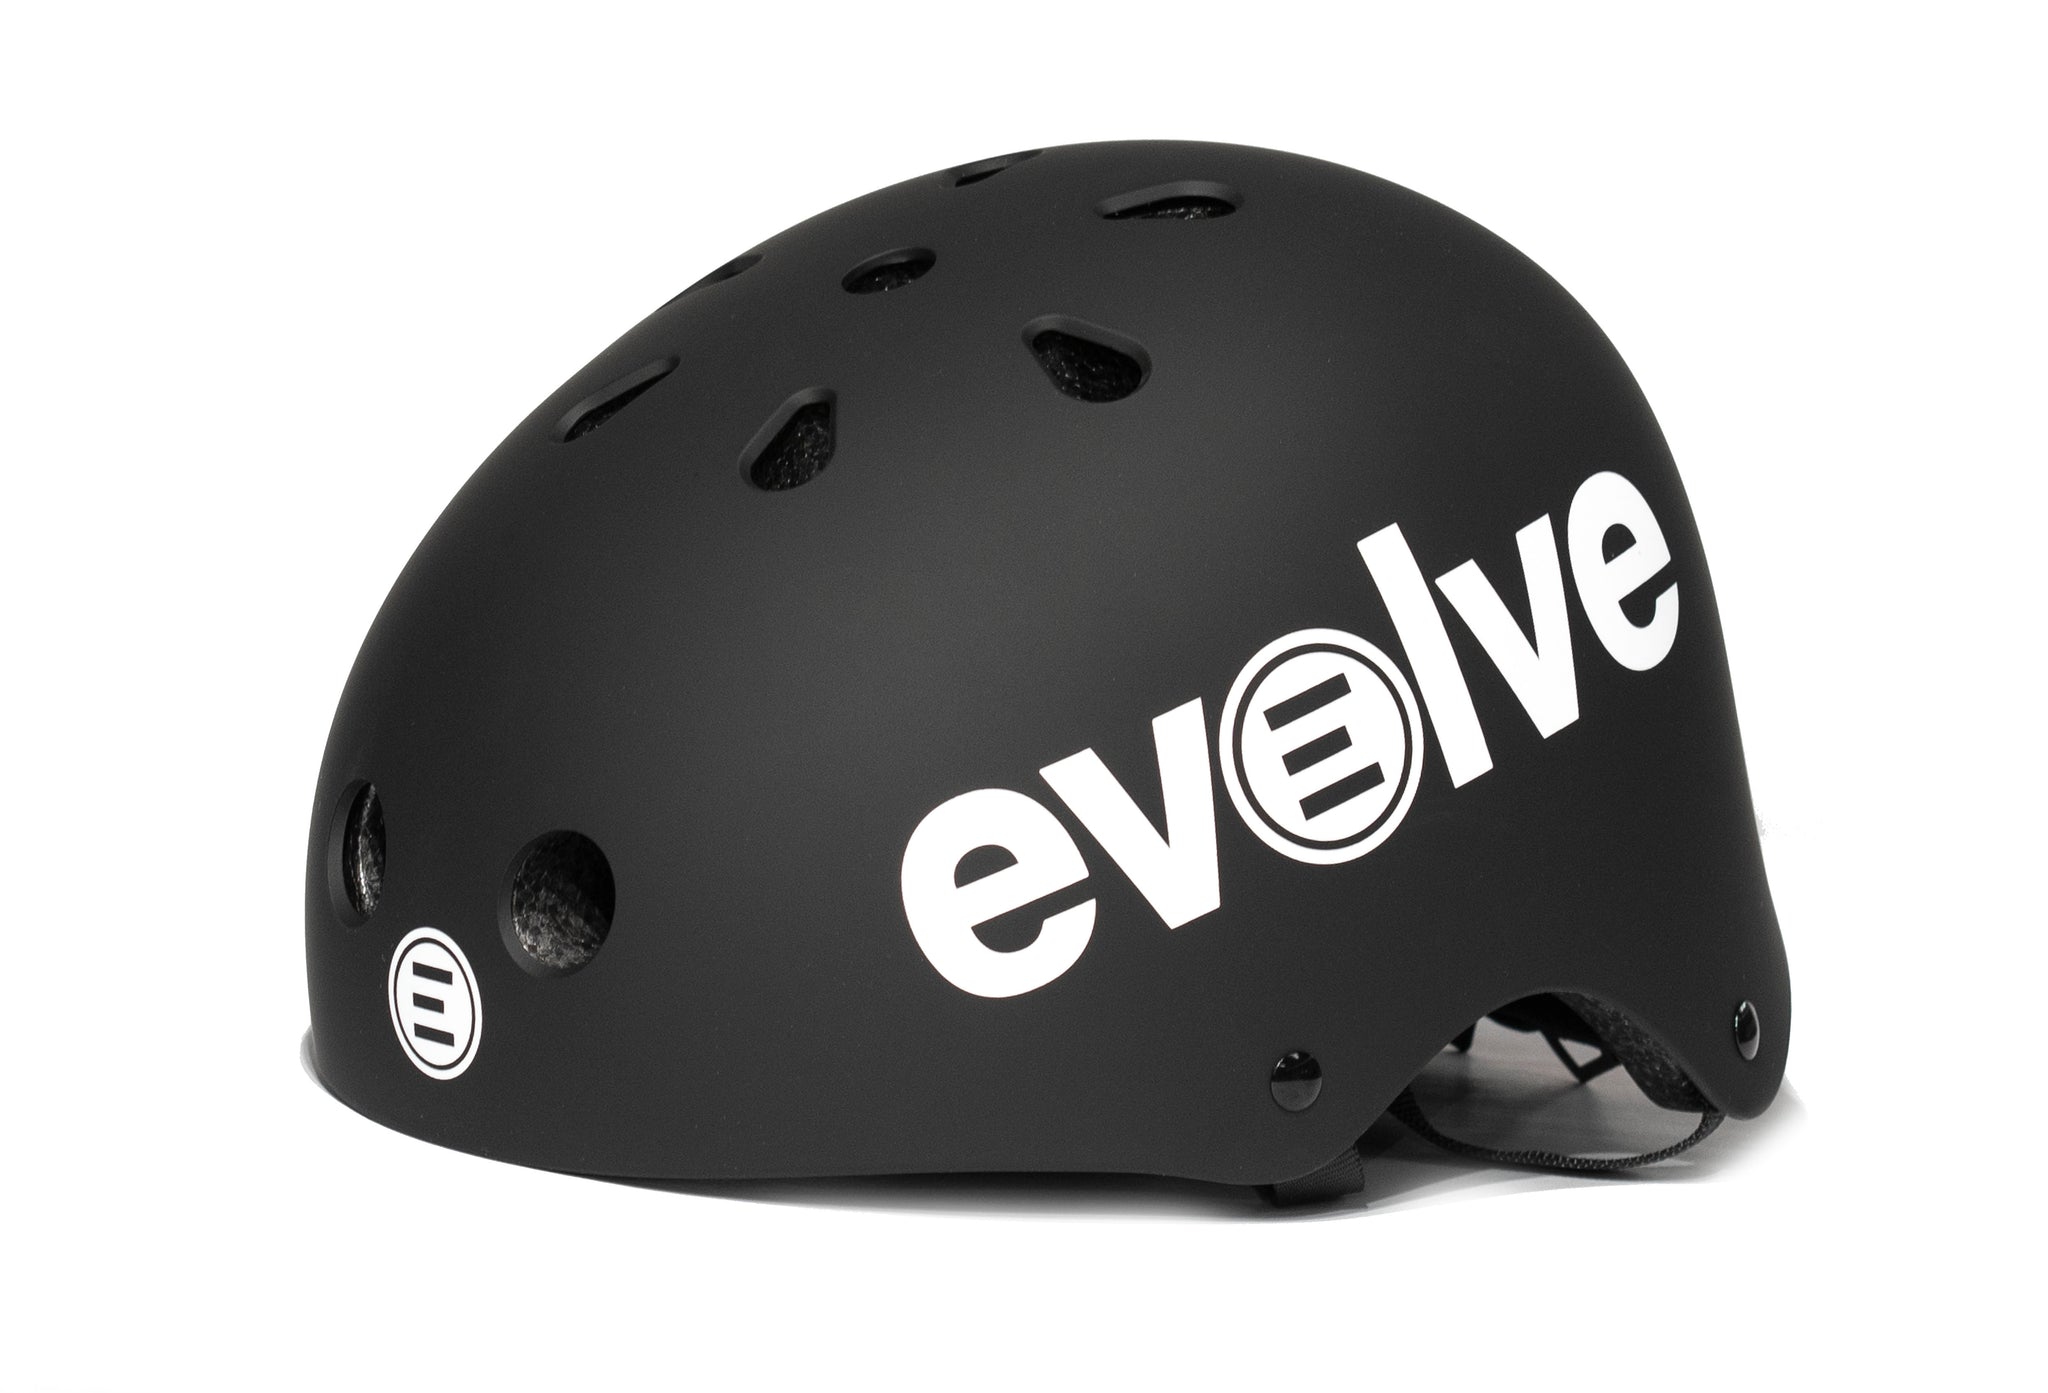 Evolve Helmet - EvolveSkateboards UAE